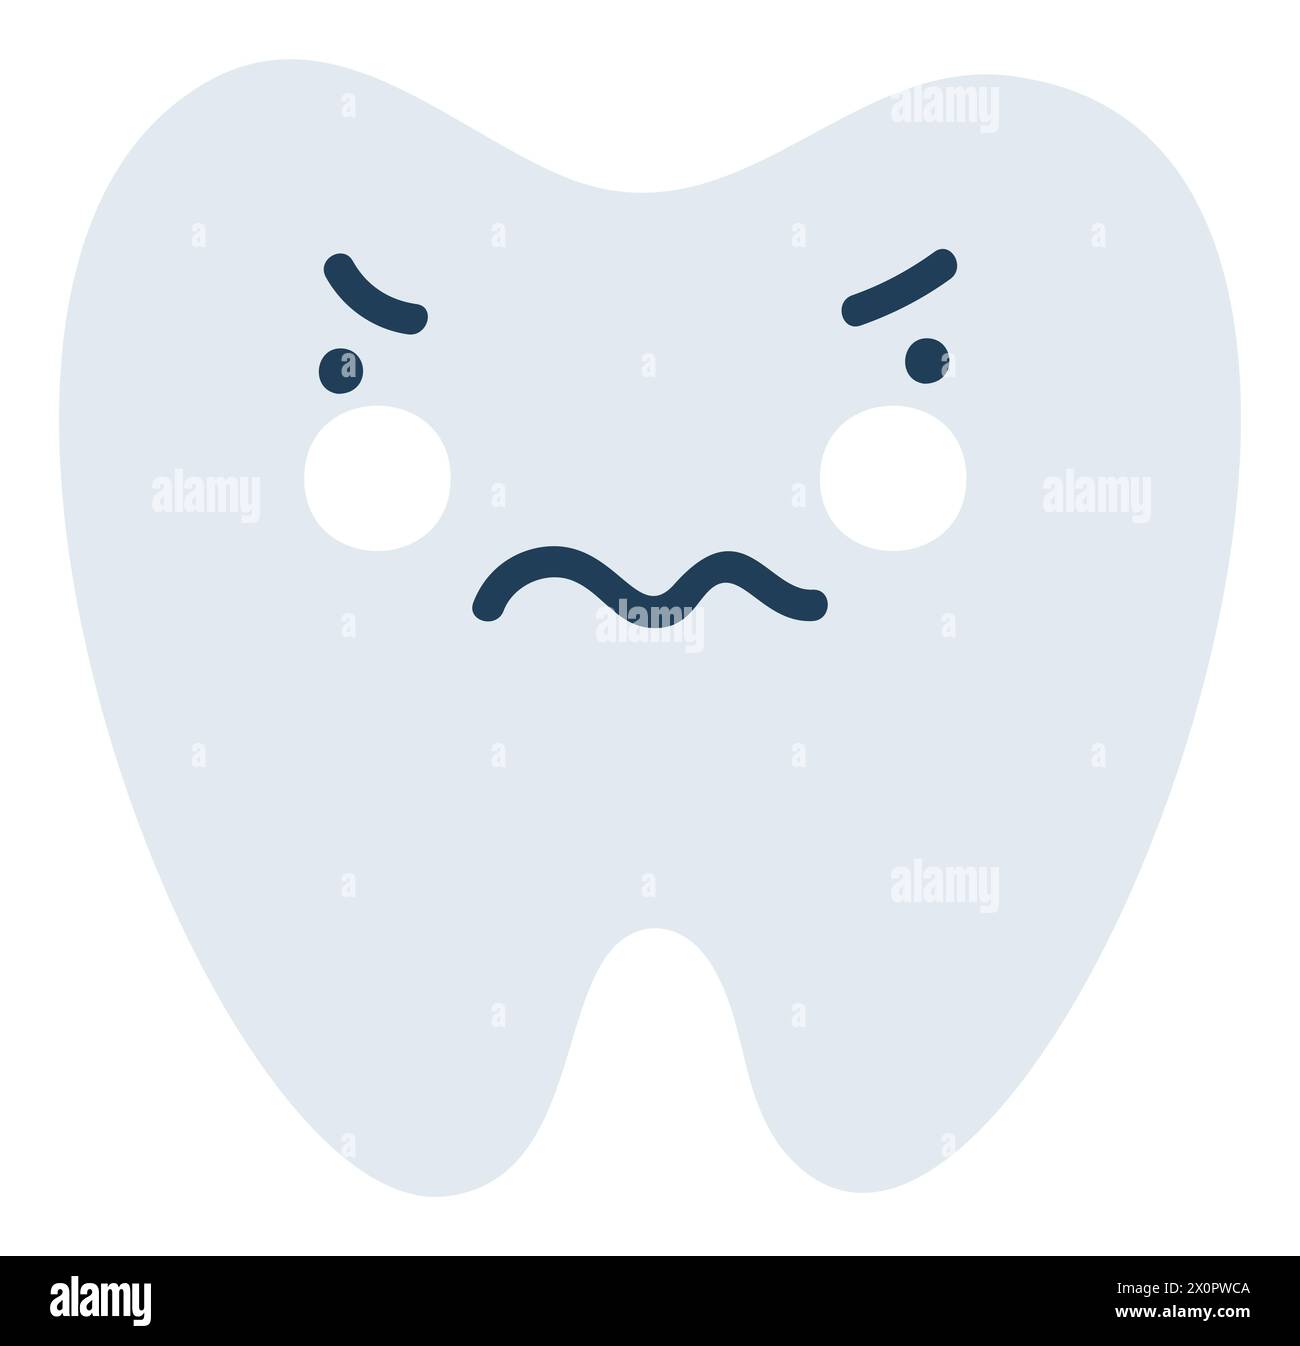 Icône Emoji de dent nerveuse grise. Mignon personnage de dent. Illustration vectorielle plate symbole de médecine d'objet Élément de dessin animé pour la conception de clinique dentaire, affiche Illustration de Vecteur